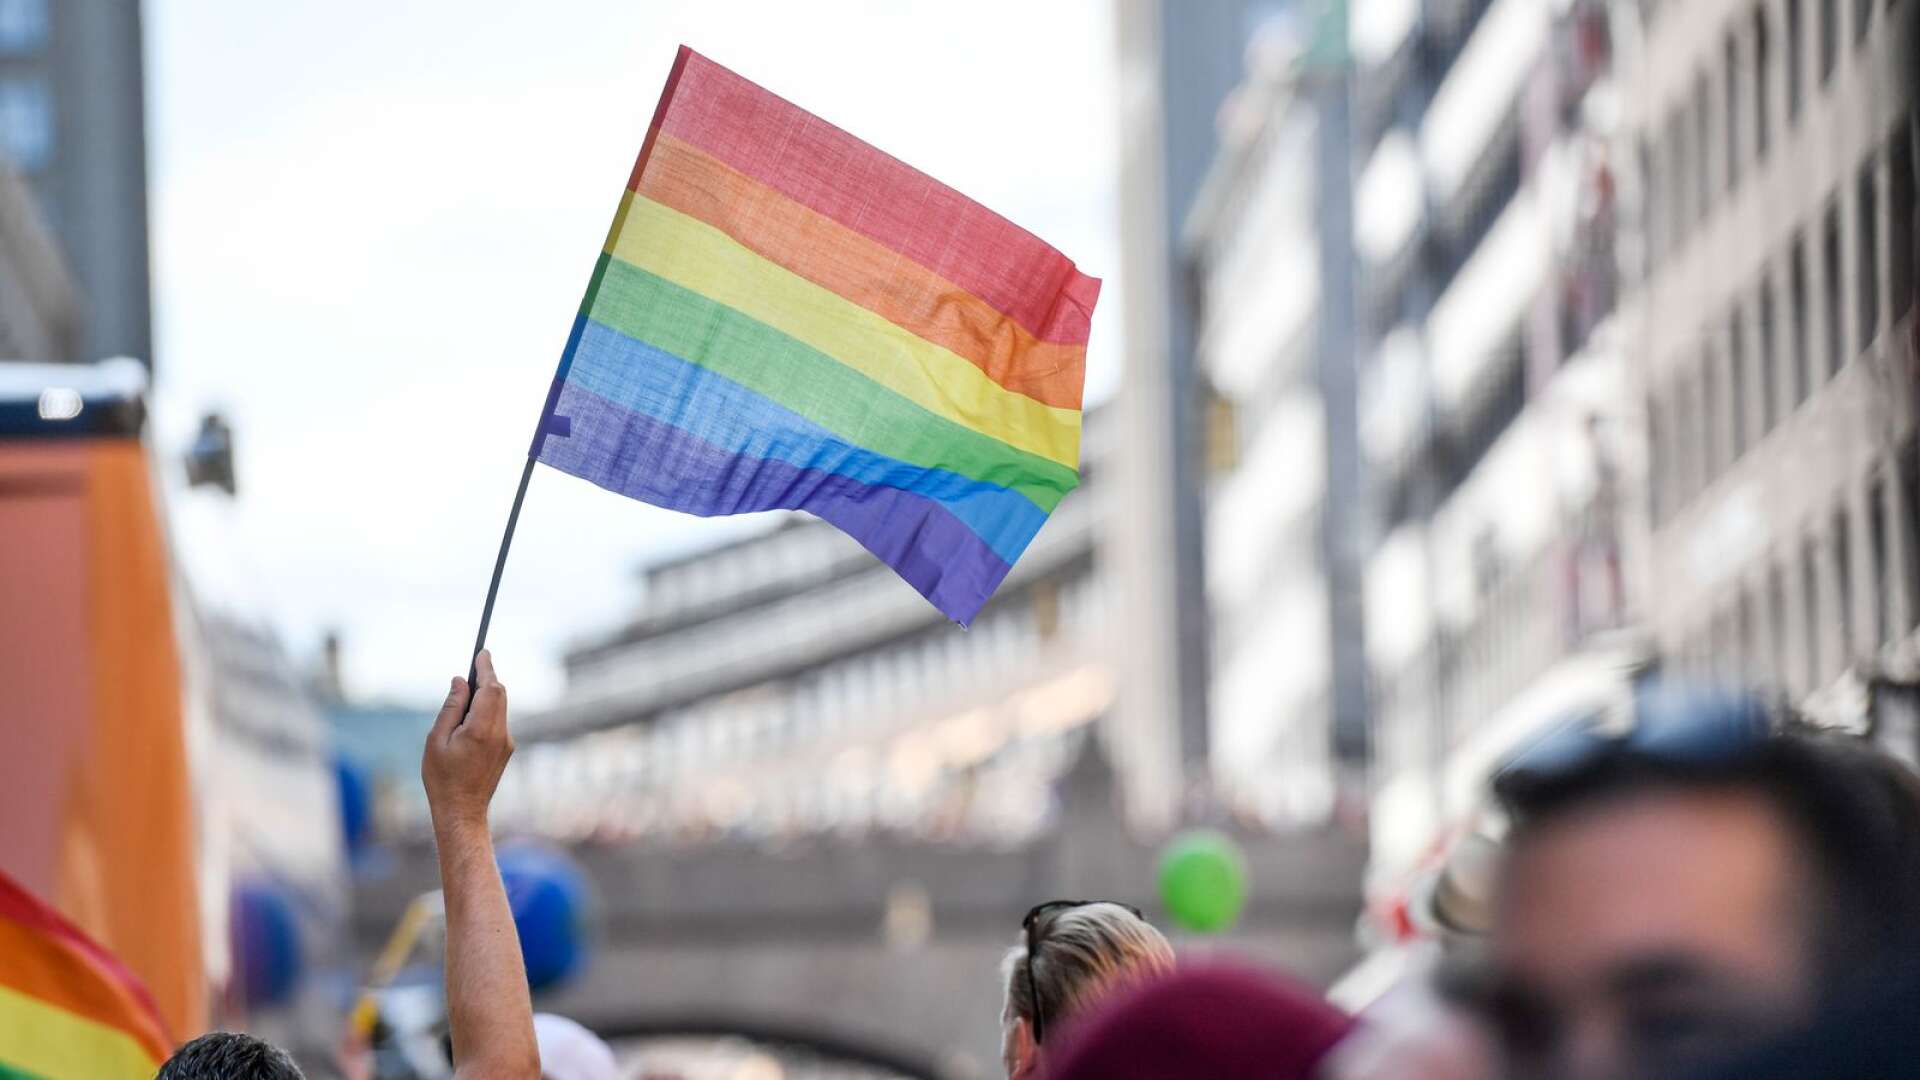 Nästa år ser vi fram emot att gå i Prideparaden i Stockholm, till dess och alla dagar därefter kommer vi driva sakpolitik som gör skillnad, skriver Filippa Reinfeldt, Tobias Billström och Kim Nilsson.